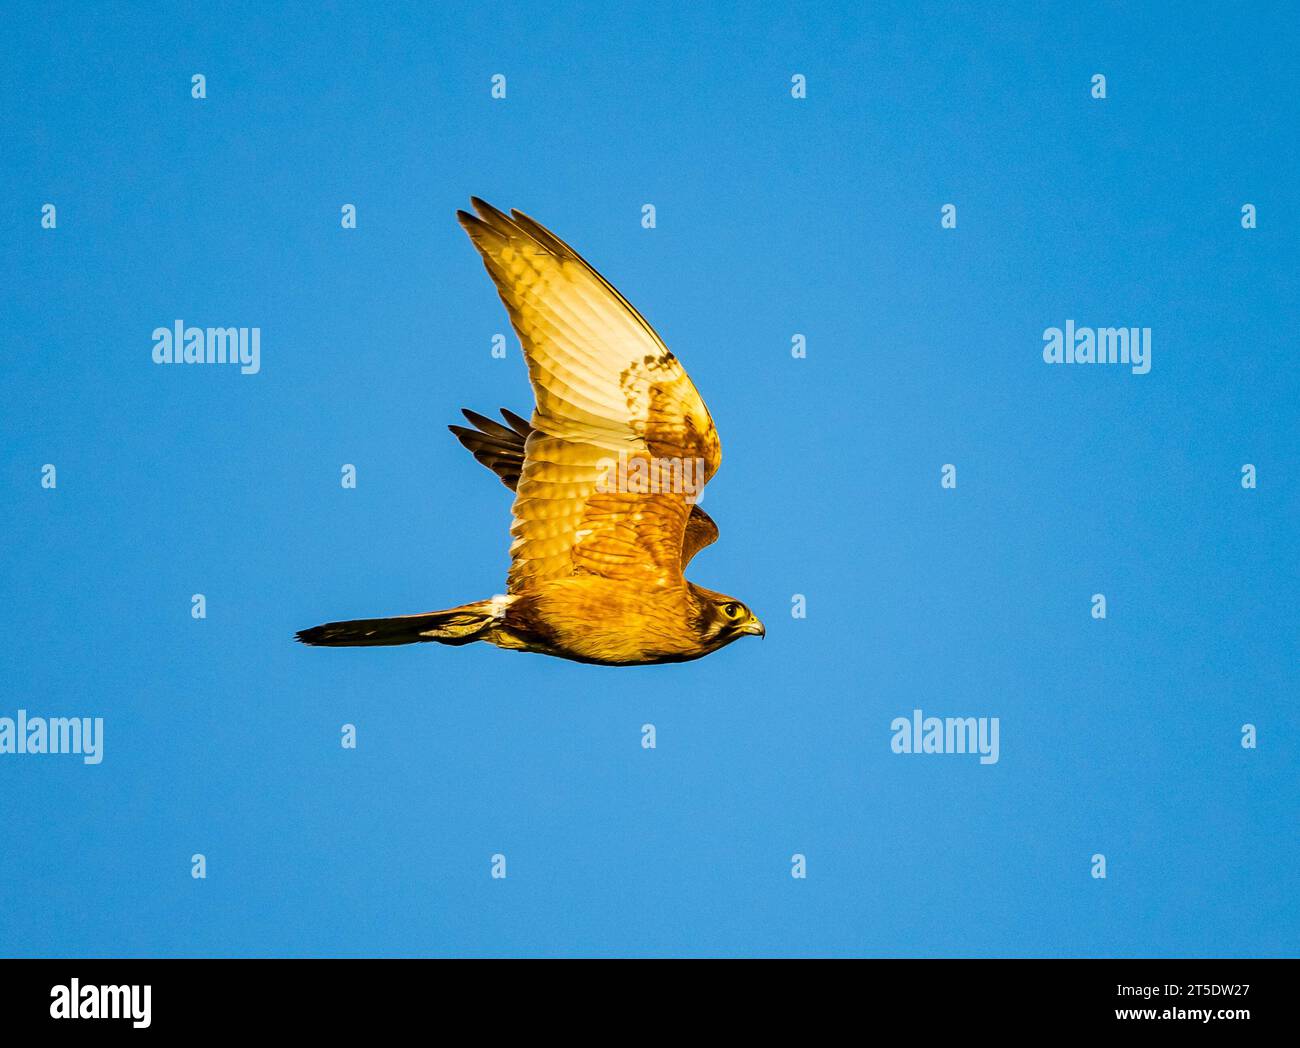 A Brown Falcon (Falco berigora) flying over blue sky. Australia. Stock Photo